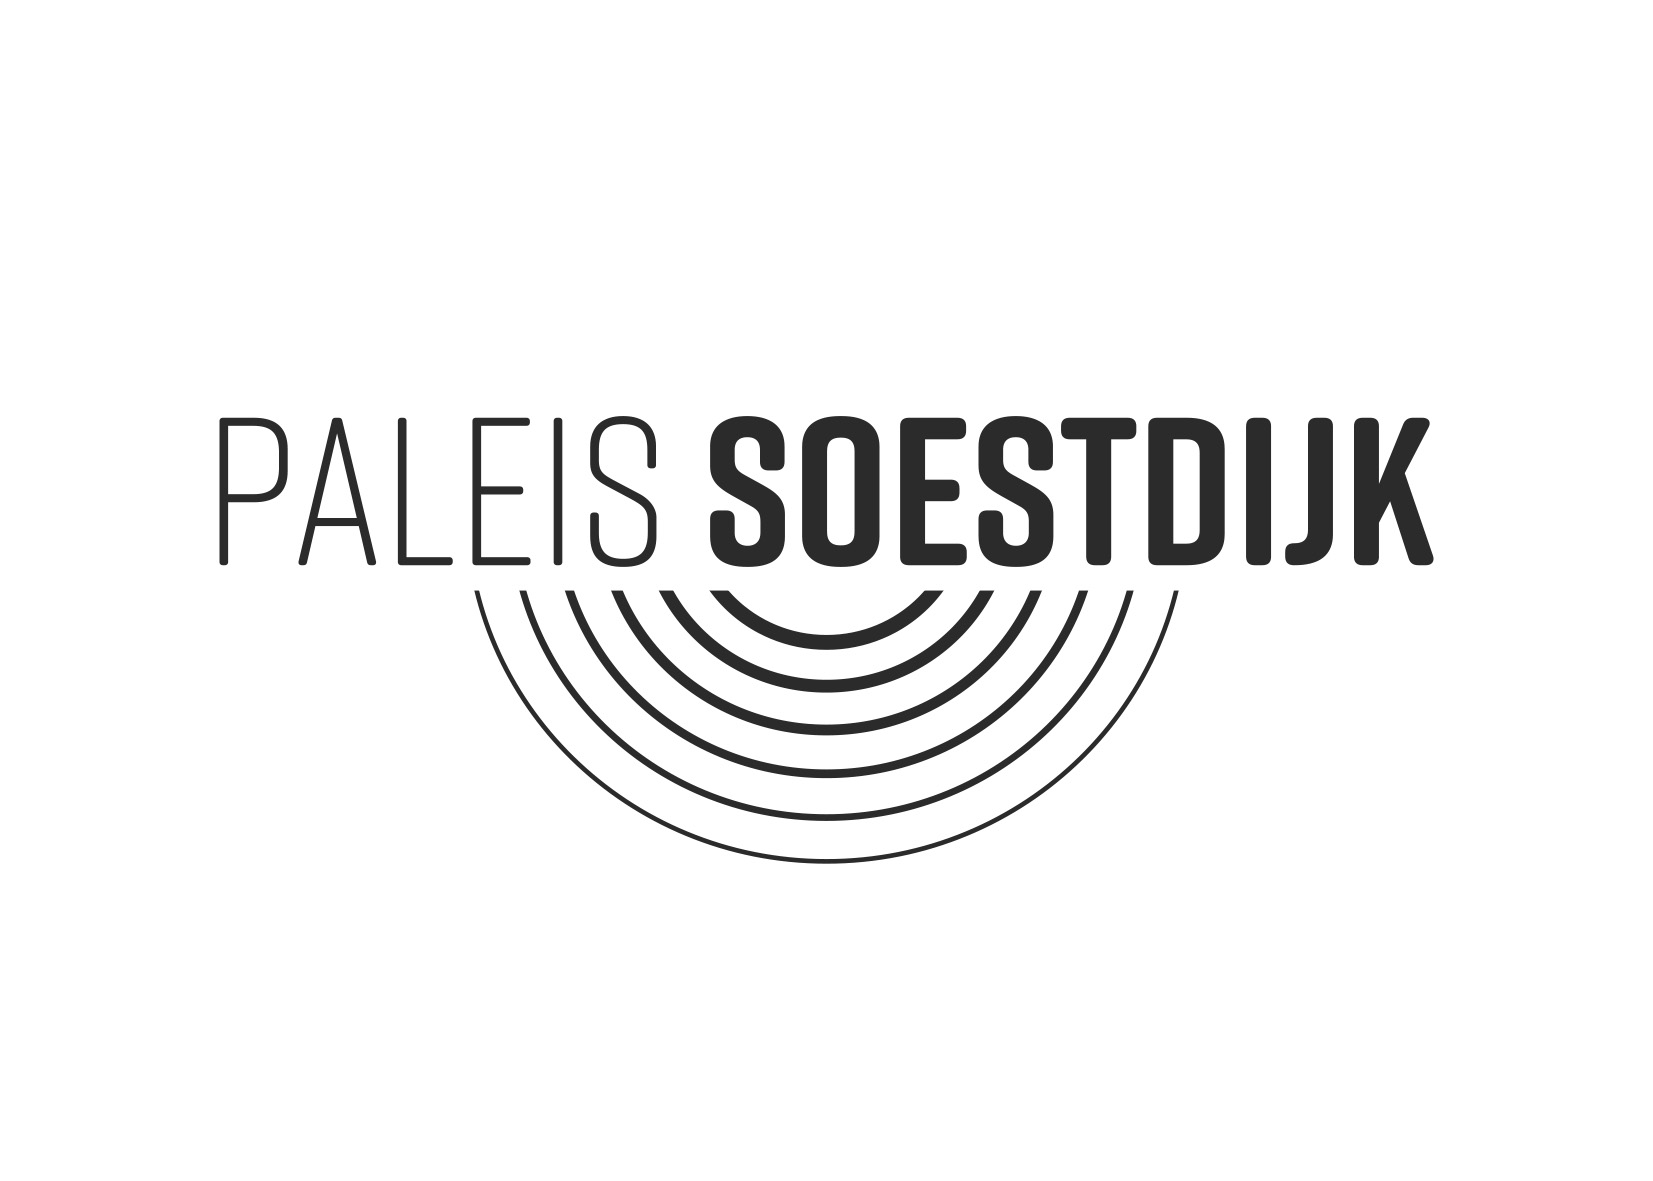 PaleisSoestdijk_logo_83%K